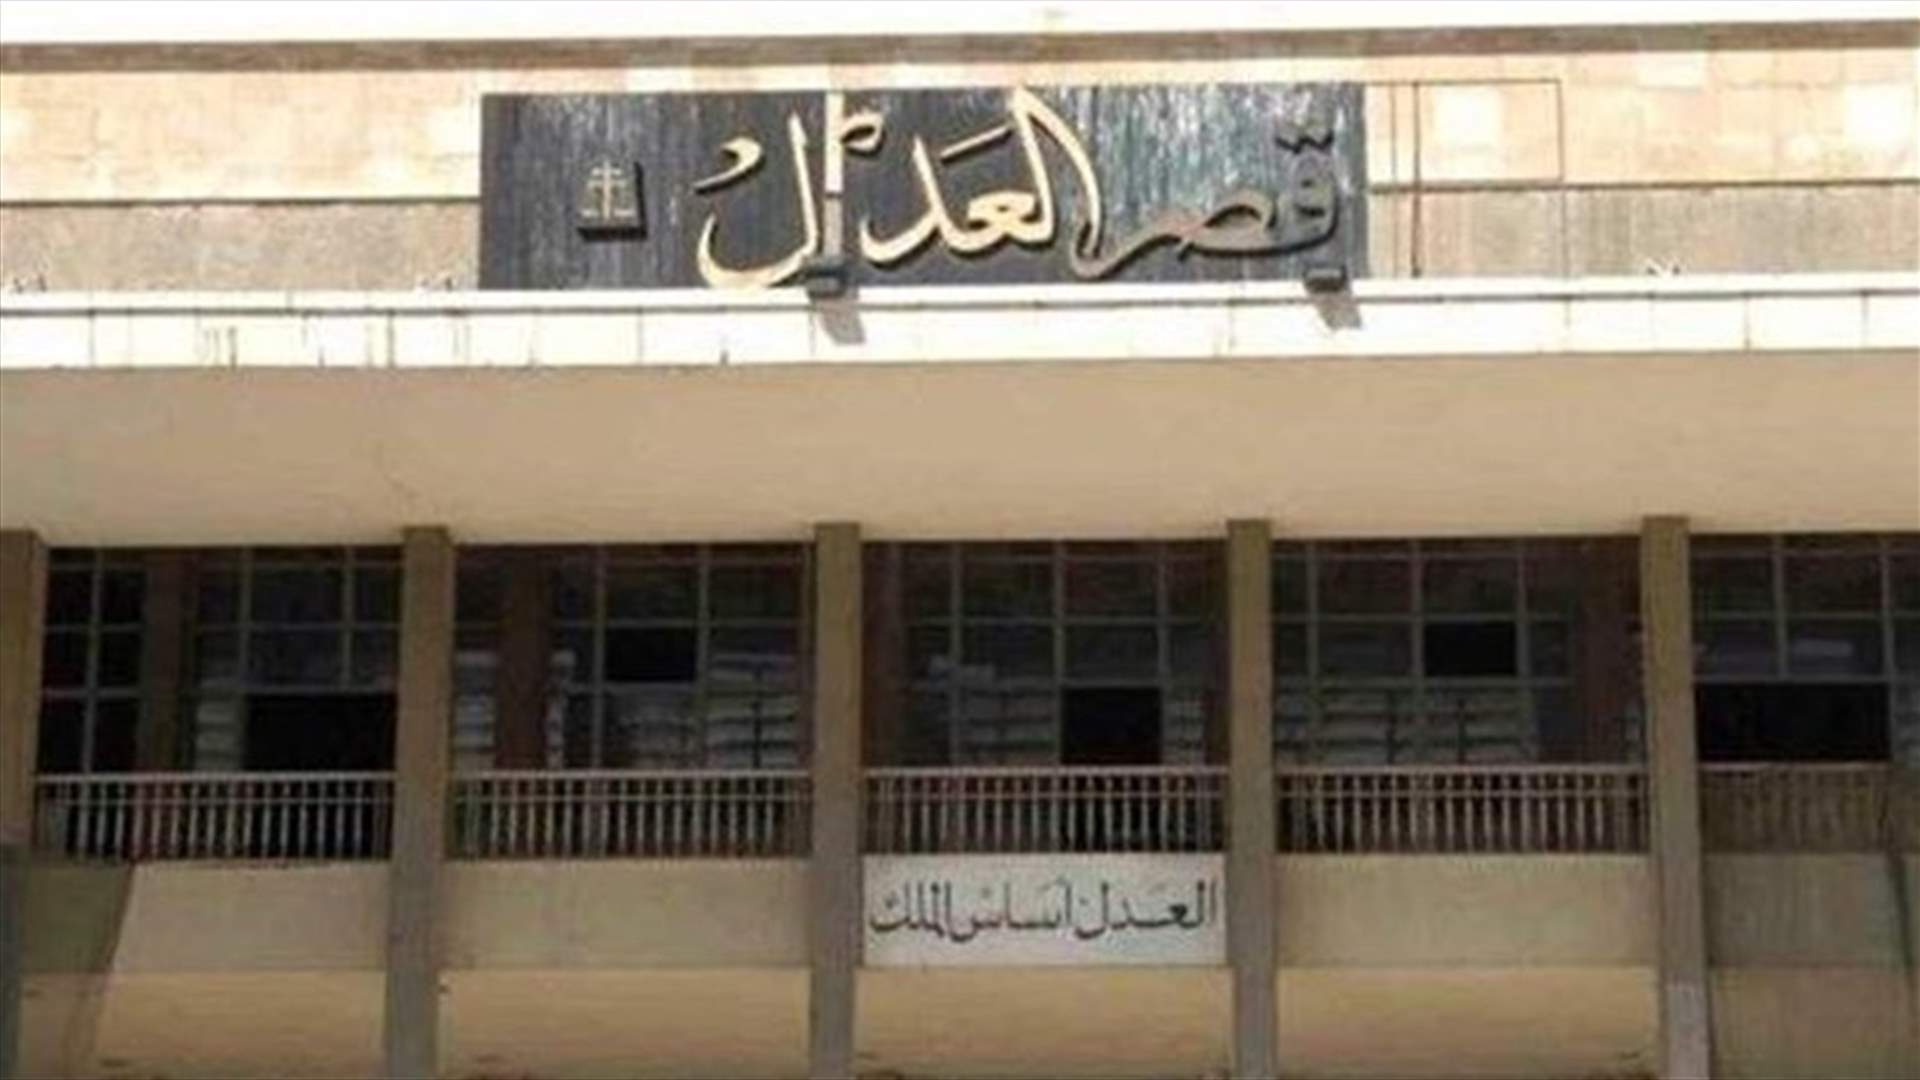 القاضي عبود قرر تأجيل إنتخابات قاضيين متقاعدين في منصب الشرف في الهيئة الوطنية لمكافحة الفساد